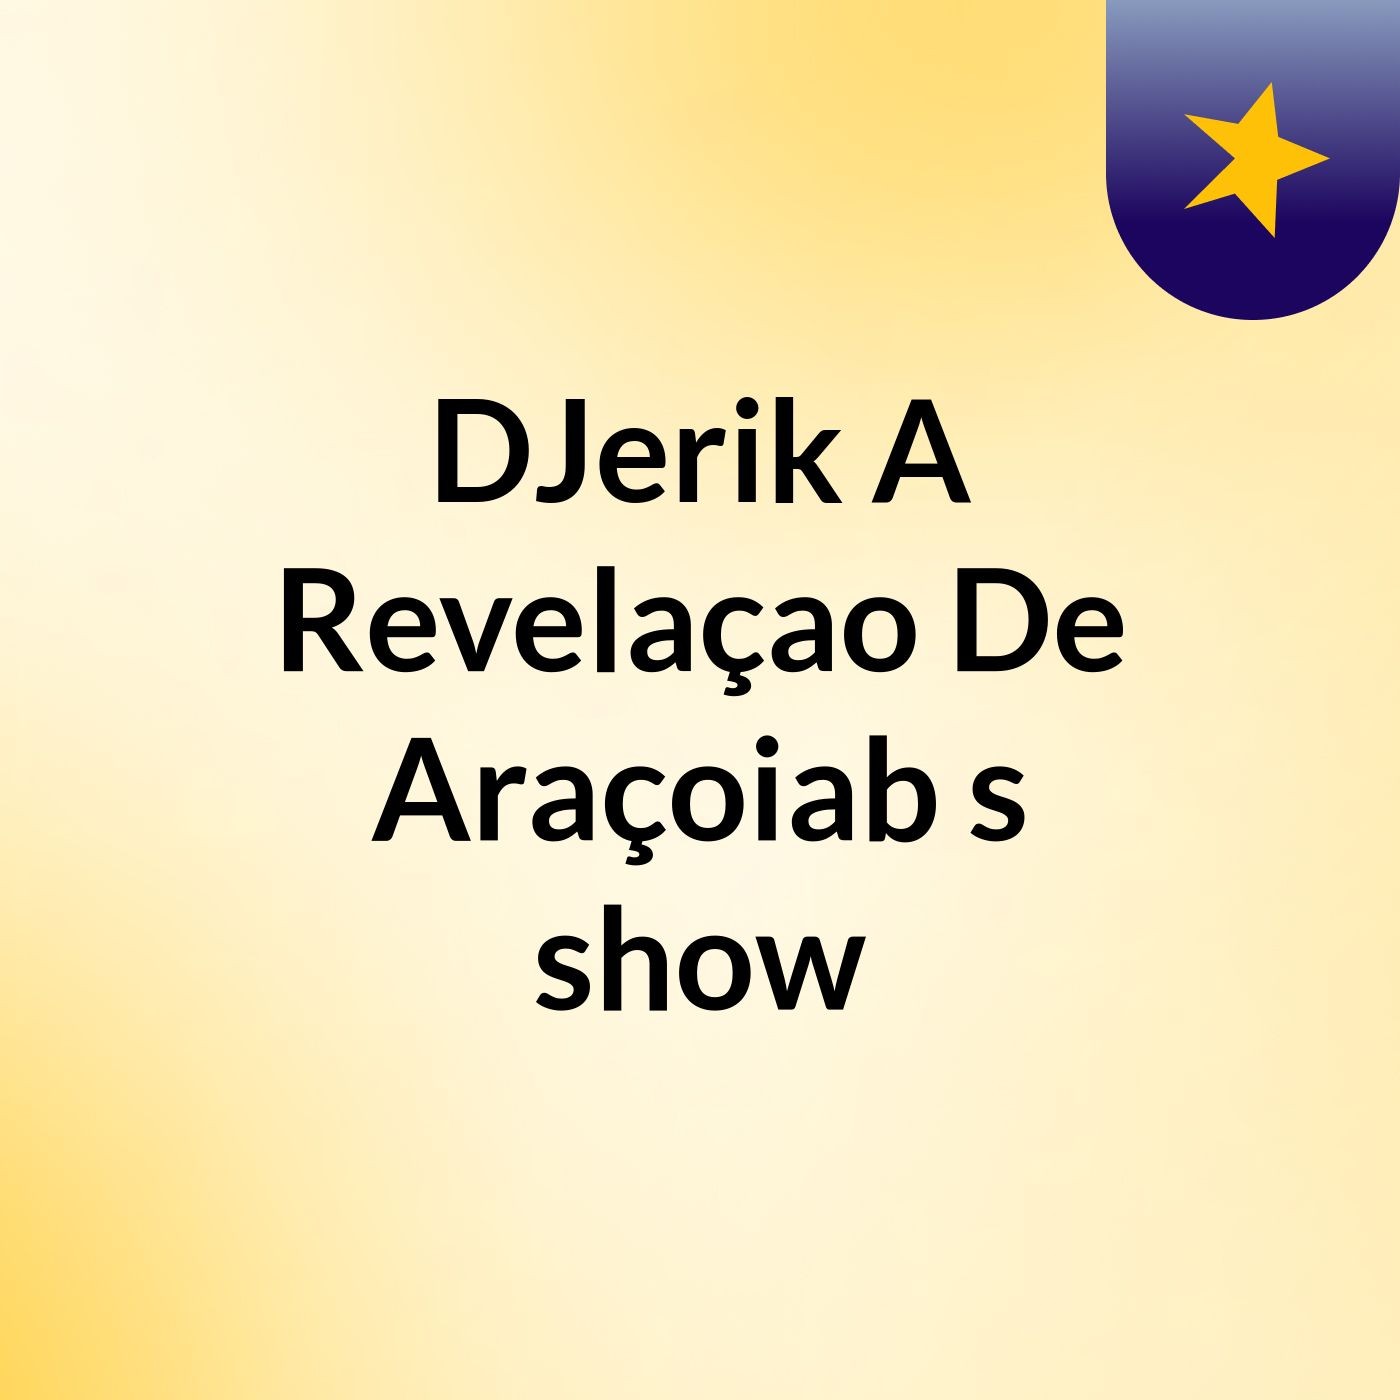 DJerik A Revelaçao De Araçoiab's show